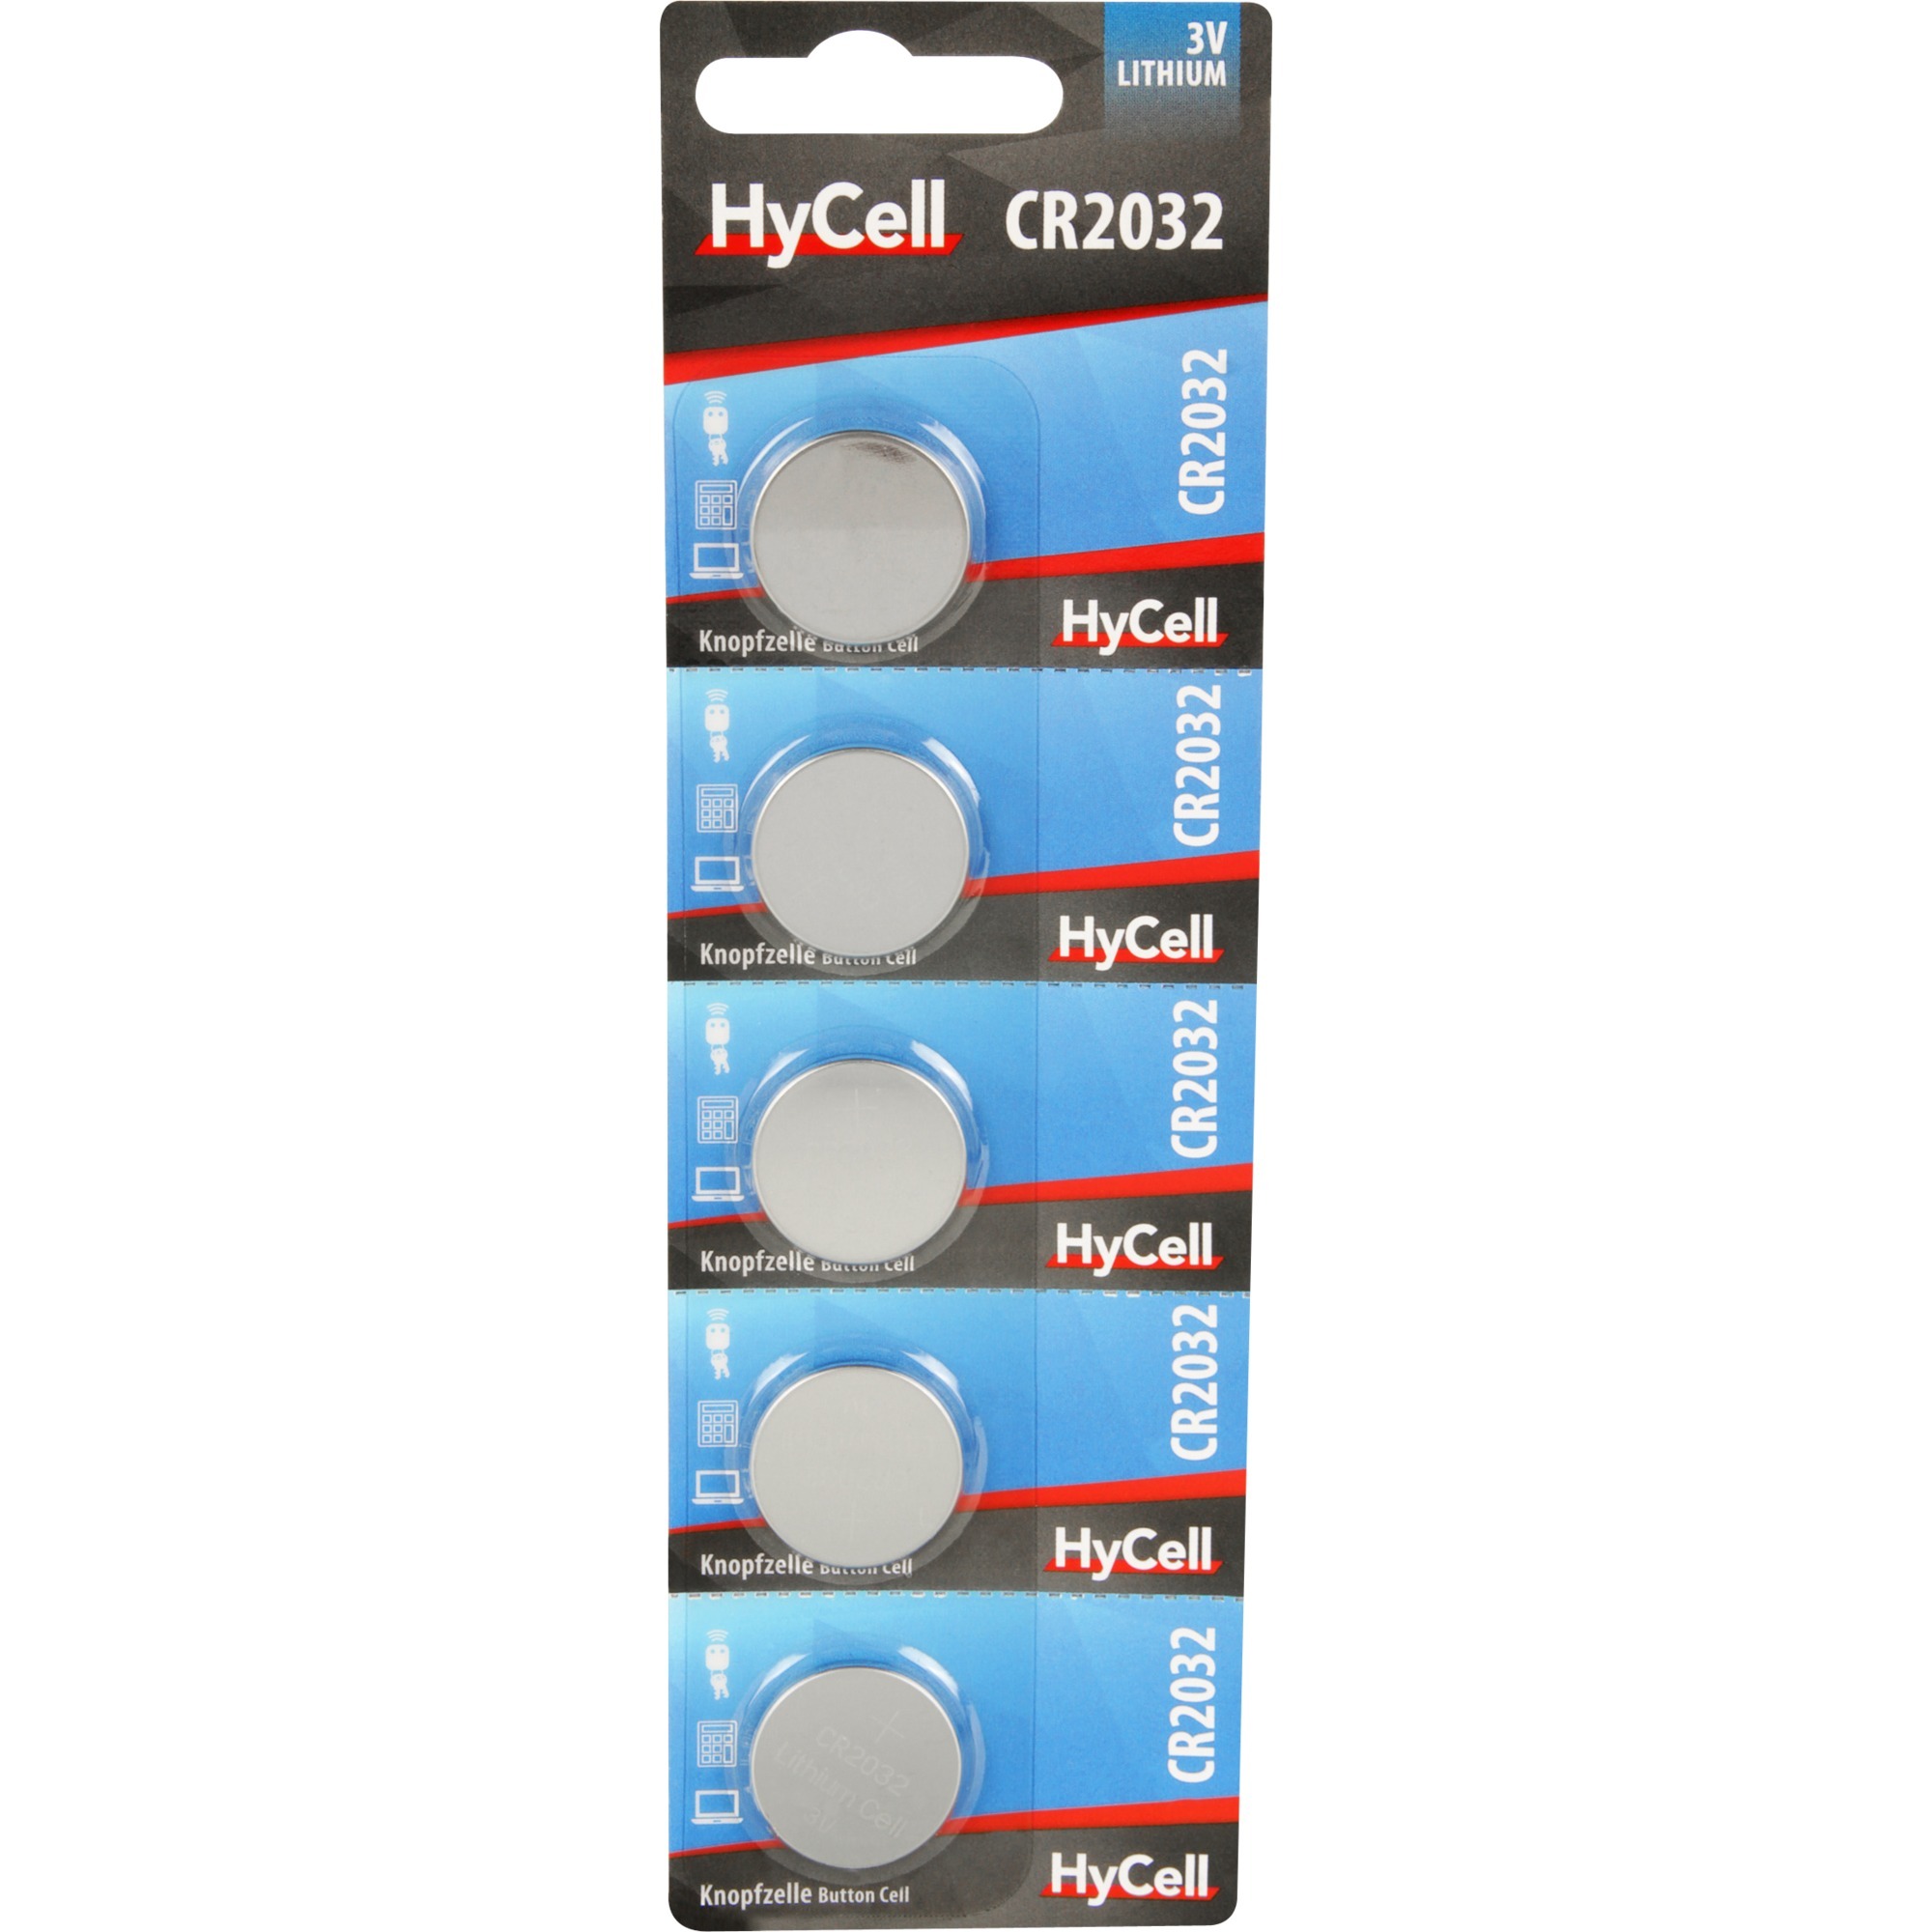 Image of Alternate - Lithium Knopfzellen CR2032, Batterie online einkaufen bei Alternate